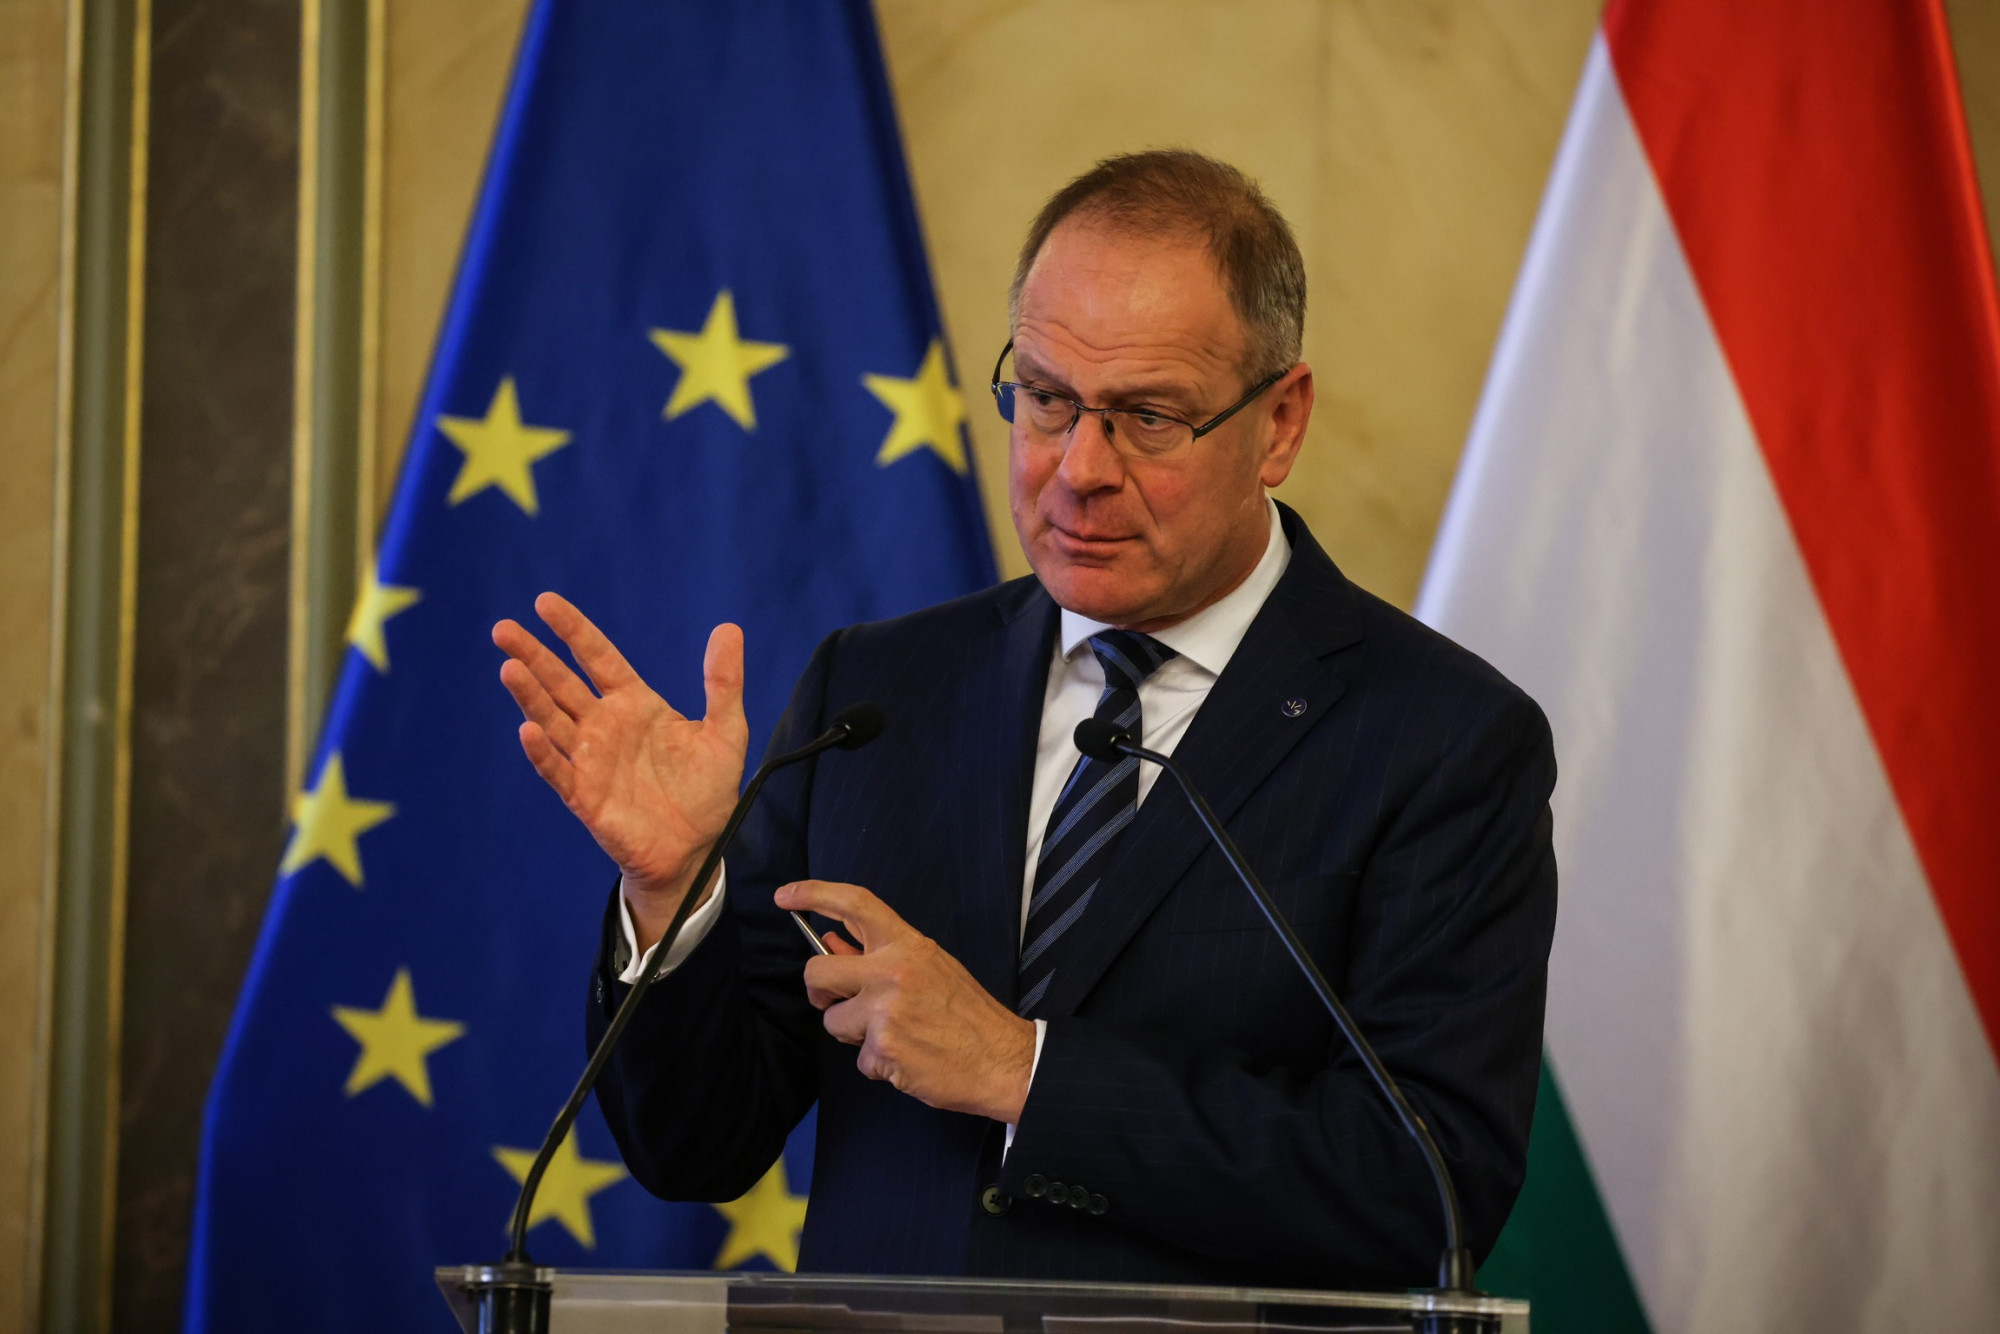 Navracsics Tibor 2022. szeptember 18-án sajtótájékoztatón reagált a hírre, hogy az Európai Bizottság 7,5 milliárd euró uniós támogatás befagyasztását javasolja a magyarországi korrupciós problémák miatt.